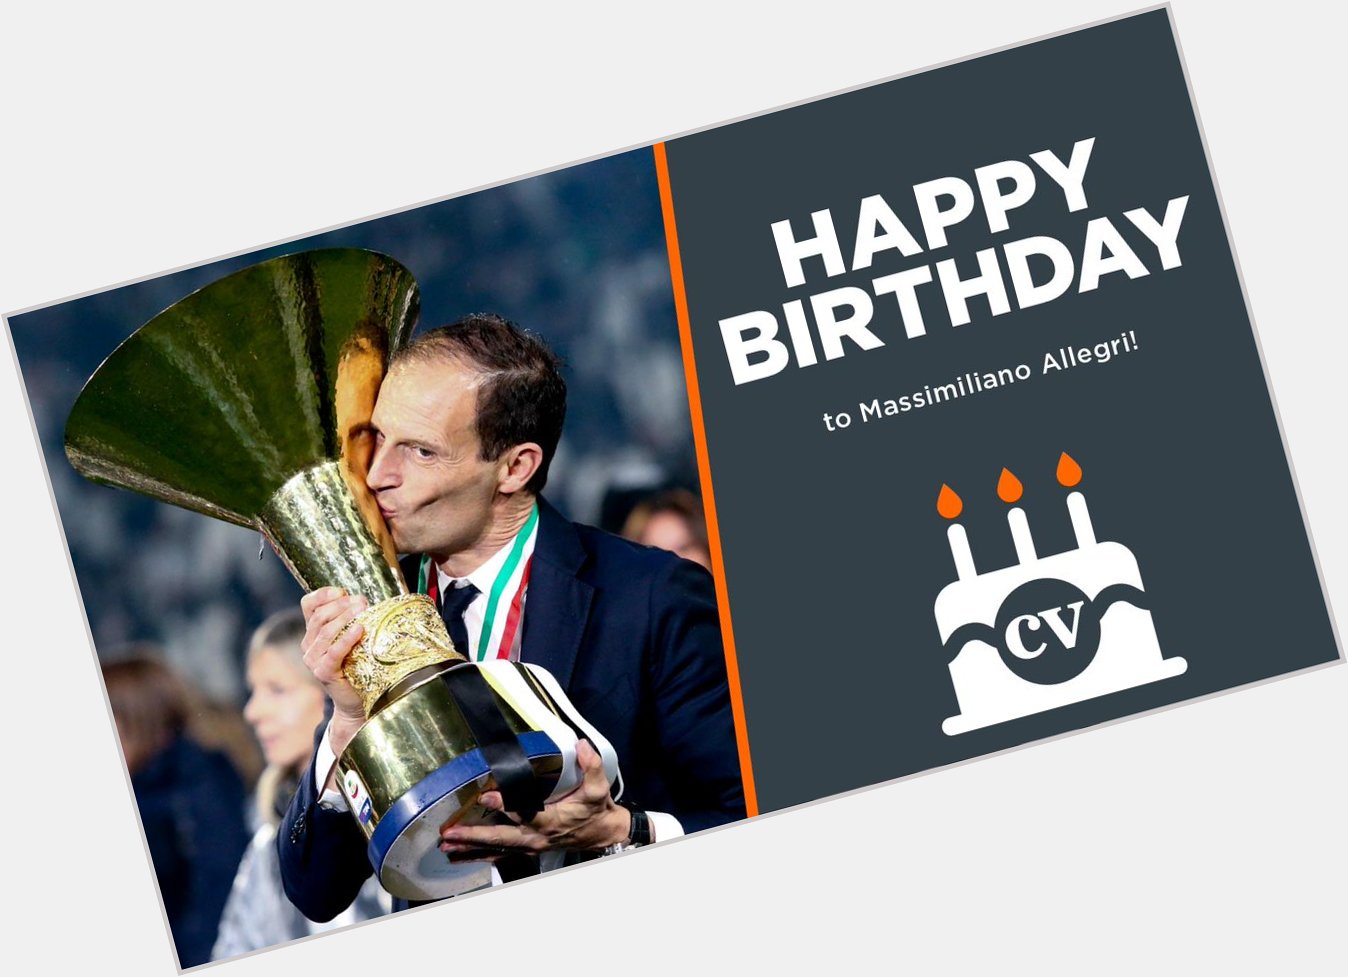 Serie A      Coppa Italia    Supercoppa Italiana    Happy birthday to Massimiliano Allegri!  